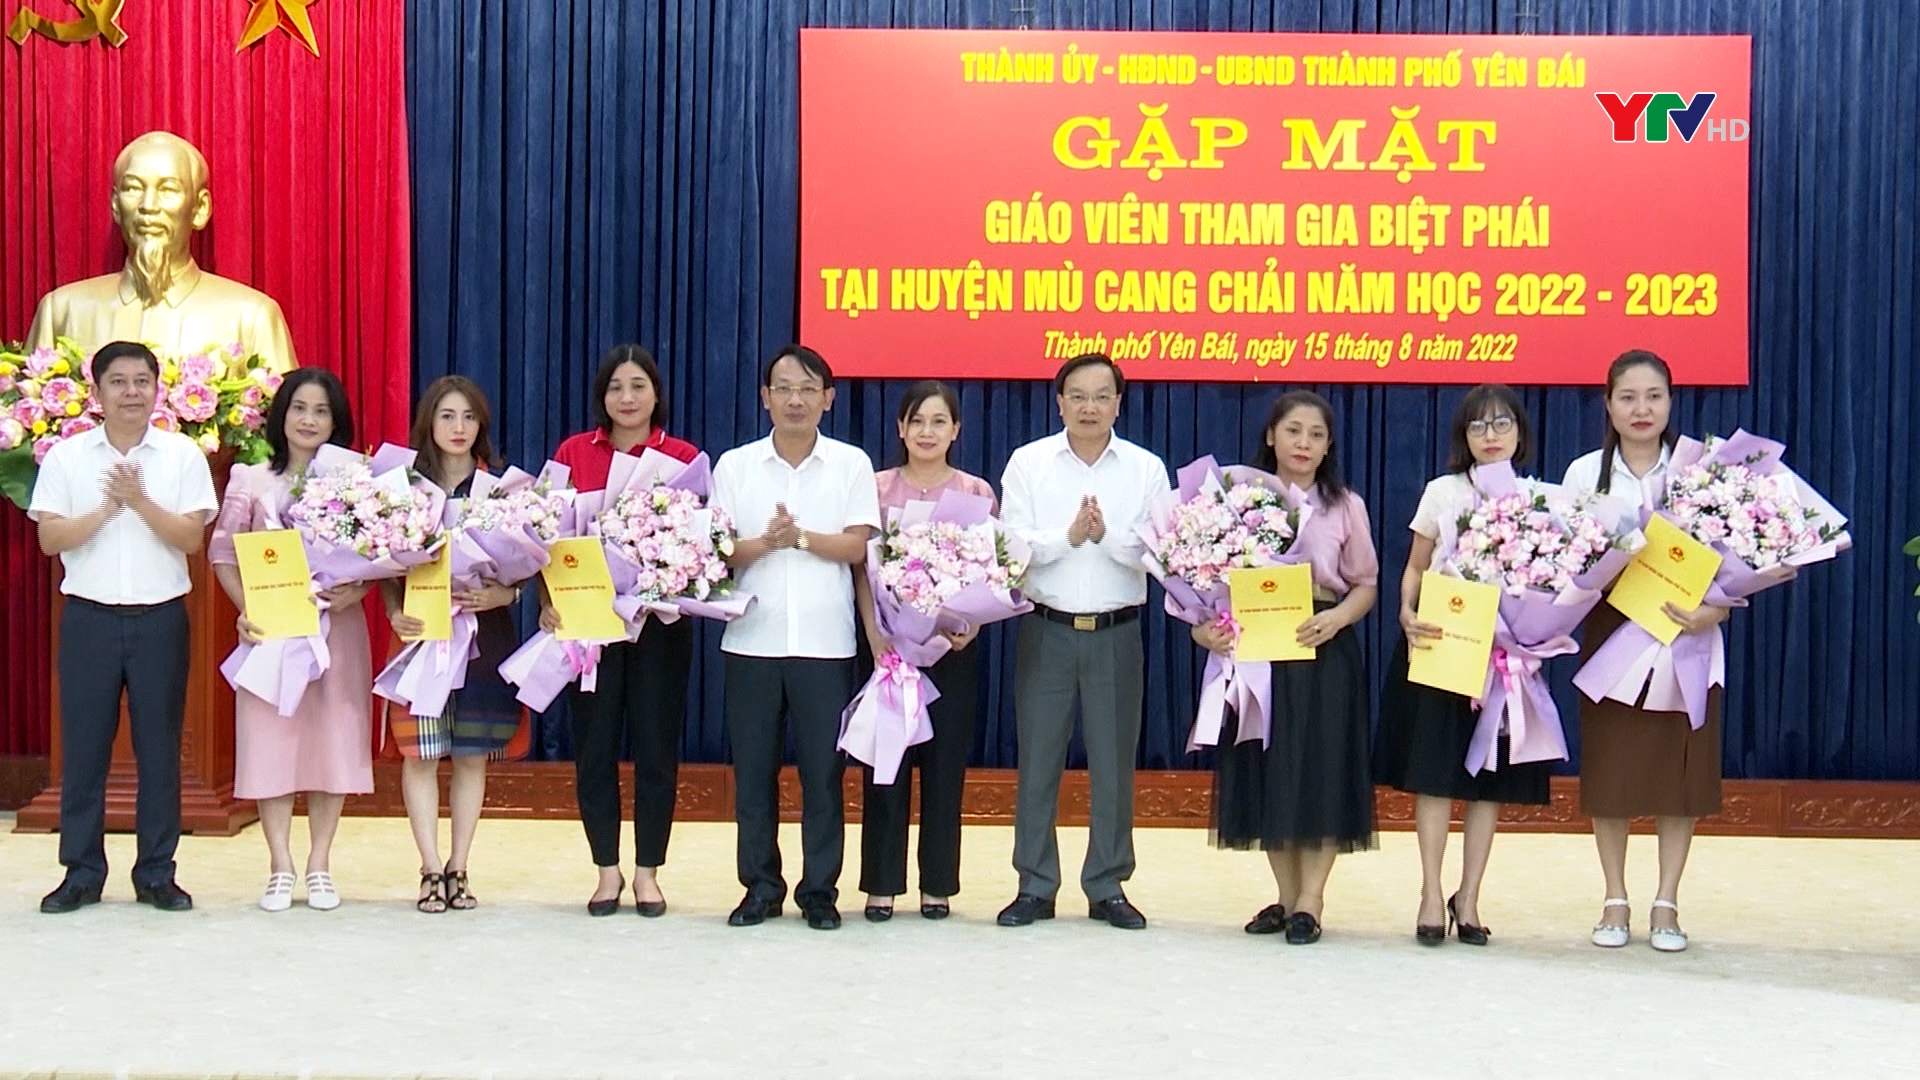 Thành phố Yên Bái: 7 giáo viên tiếng Anh biệt phái giảng dạy tại huyện Mù Cang Chải